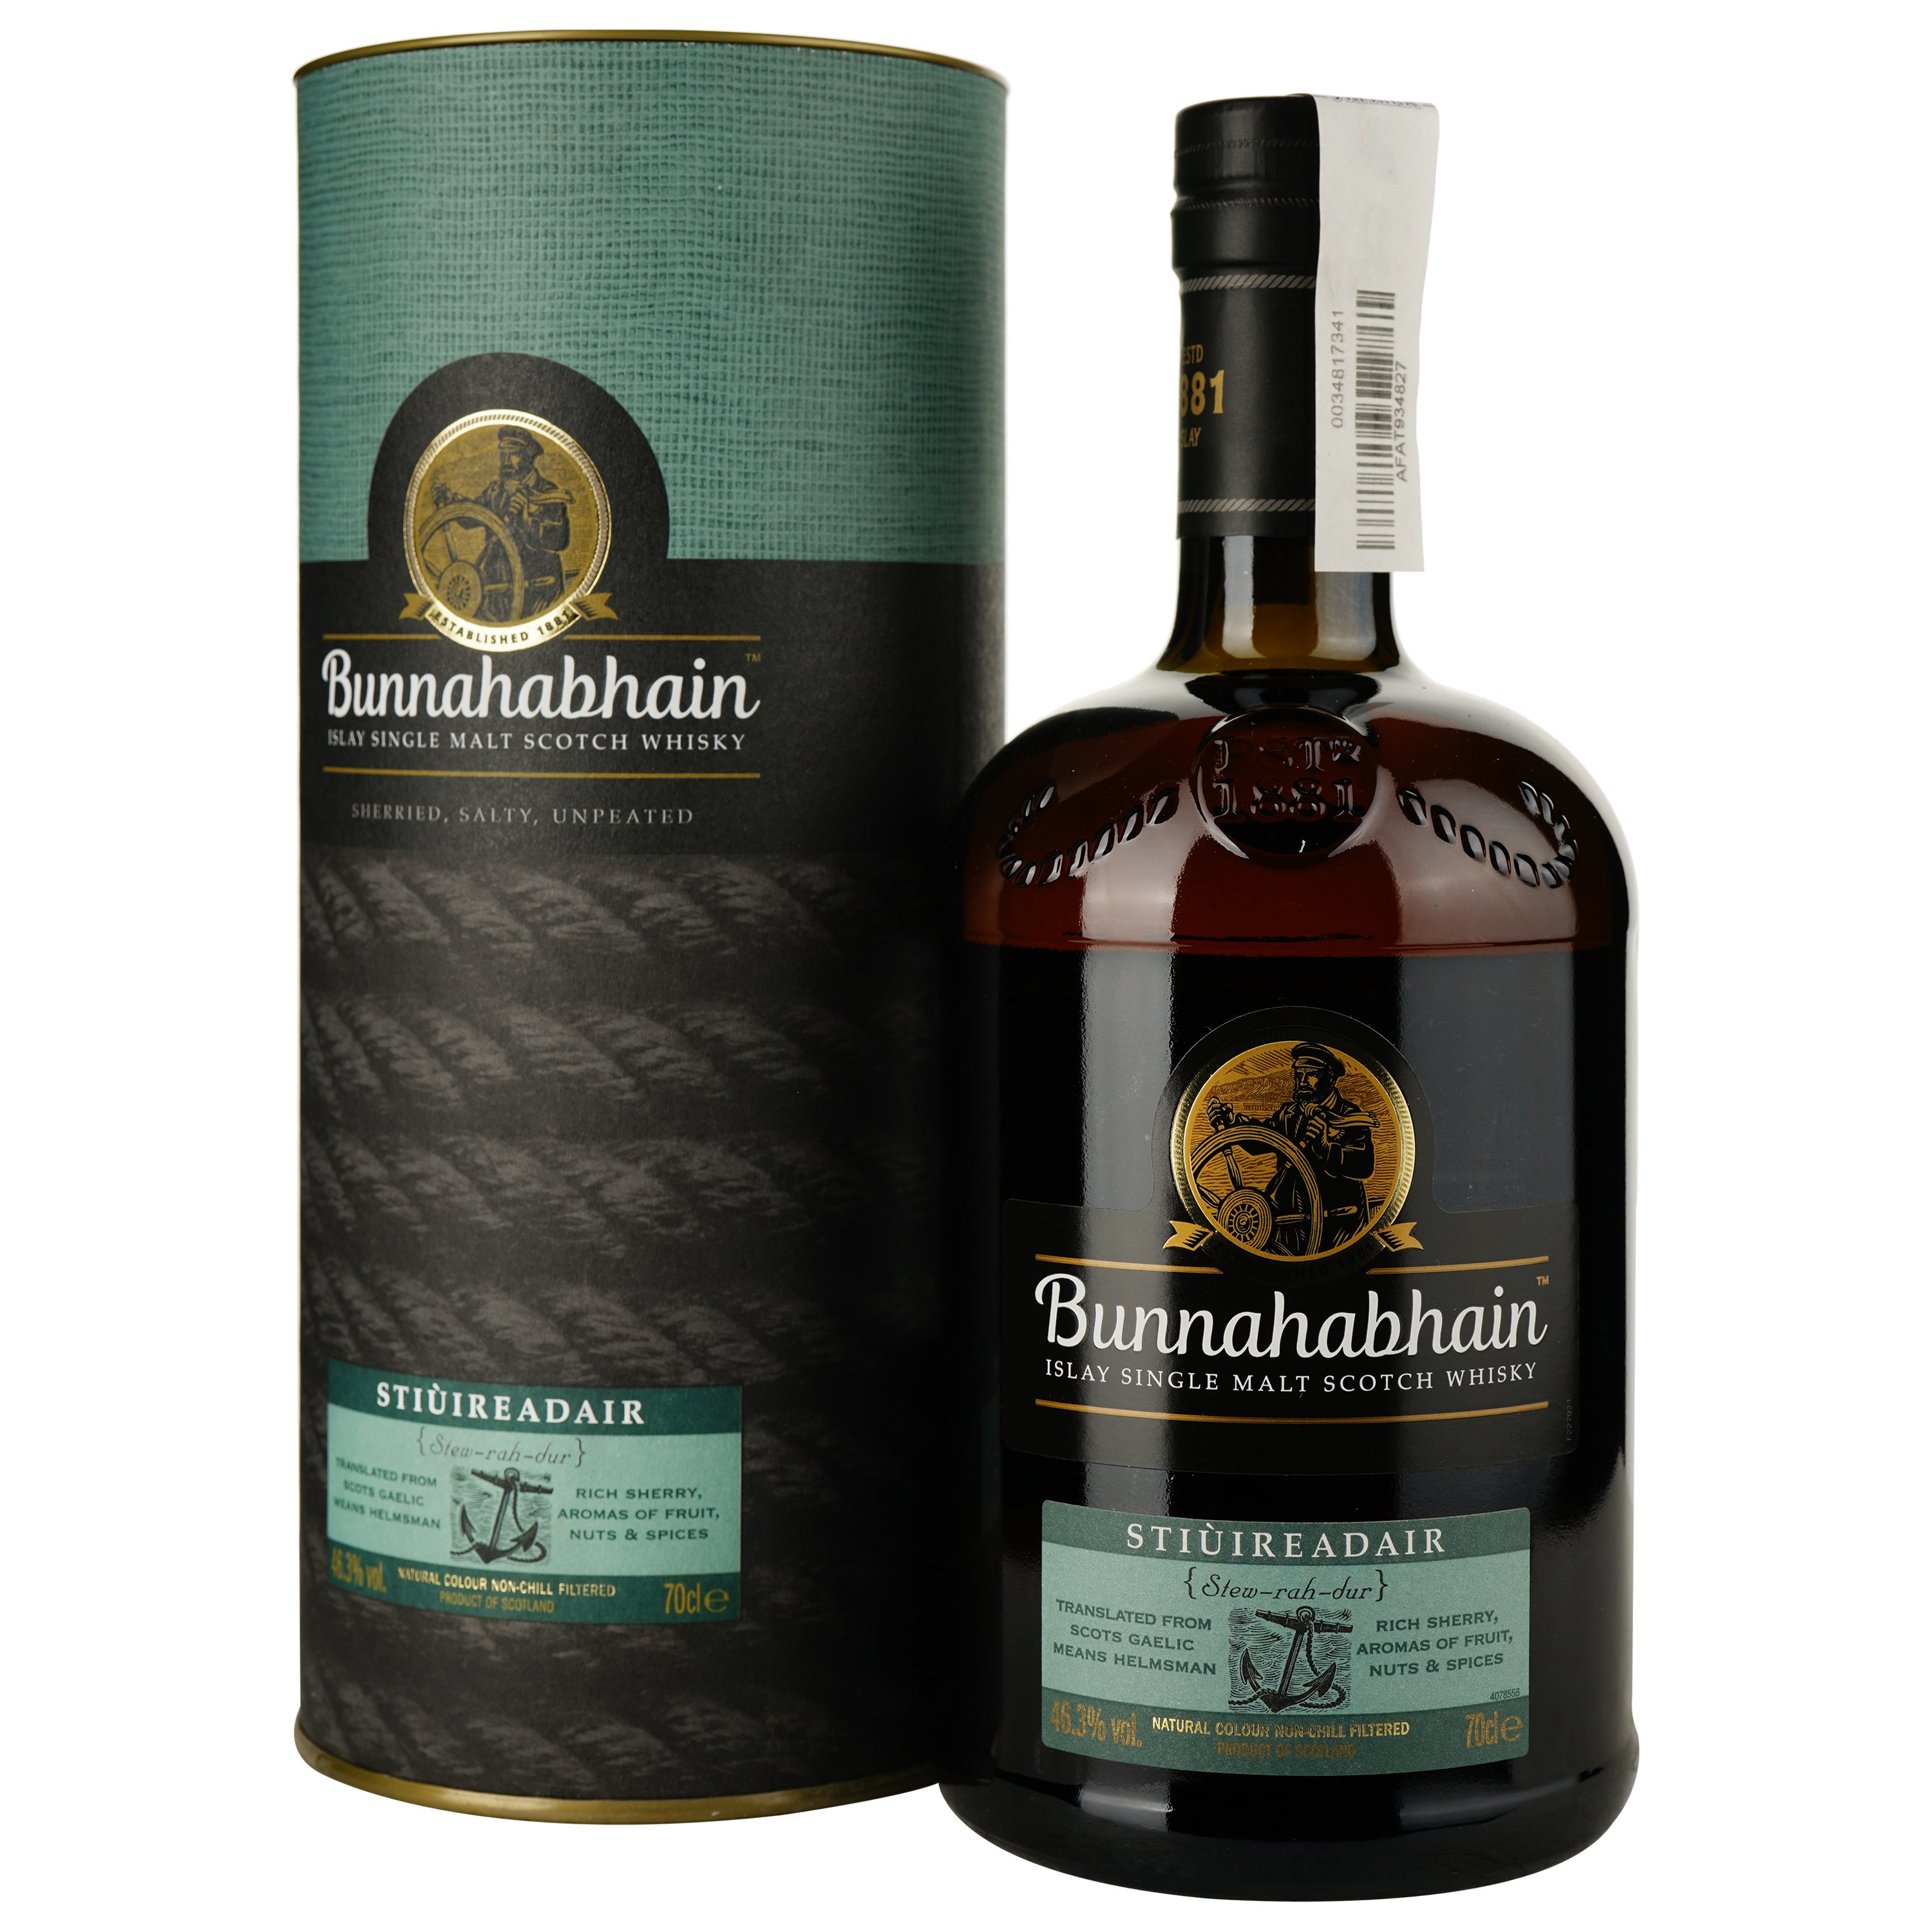 Виски Bunnahabhain Stiuireadair Single Malt Scotch Whisky 46.3% 0.7 л, в подарочной упаковке - фото 1